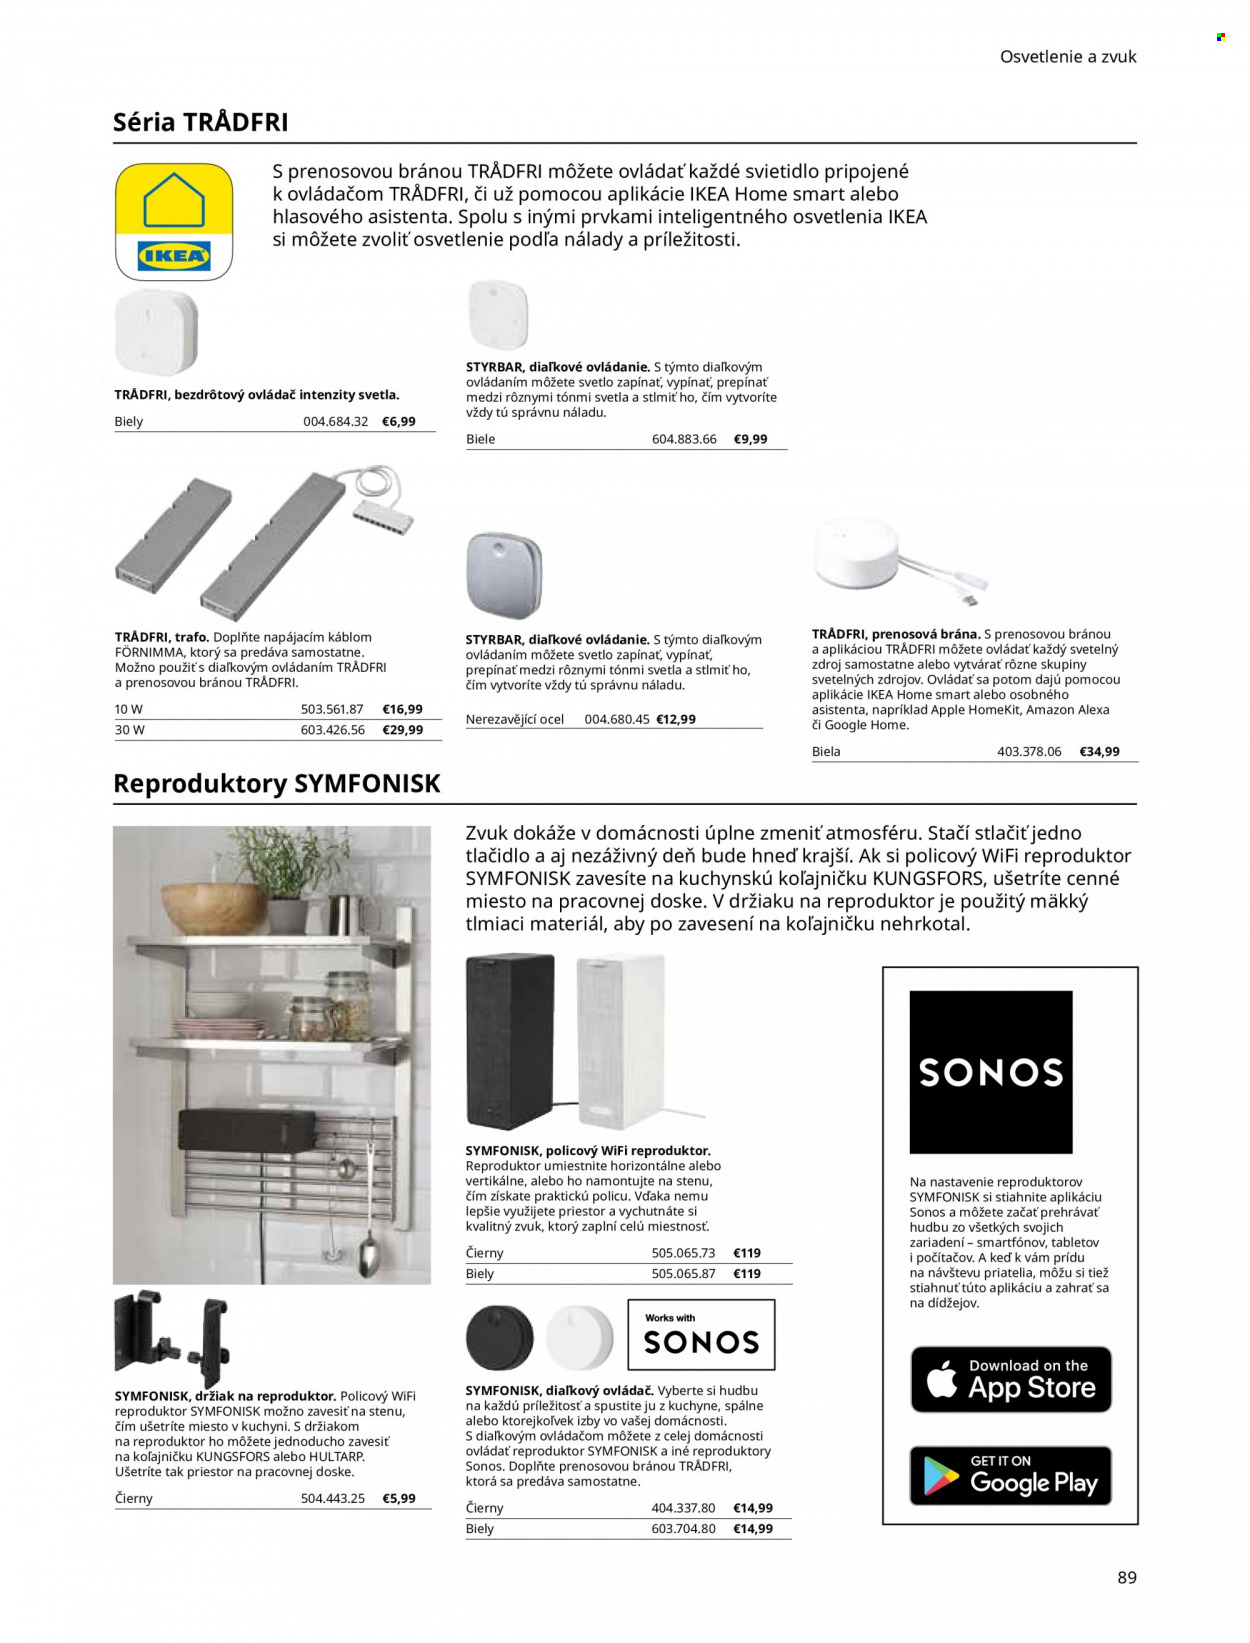 Leták IKEA - Produkty v akcii - Apple, reproduktor, Symfonisk, diaľkové ovládanie, svietidlo. Strana 89.